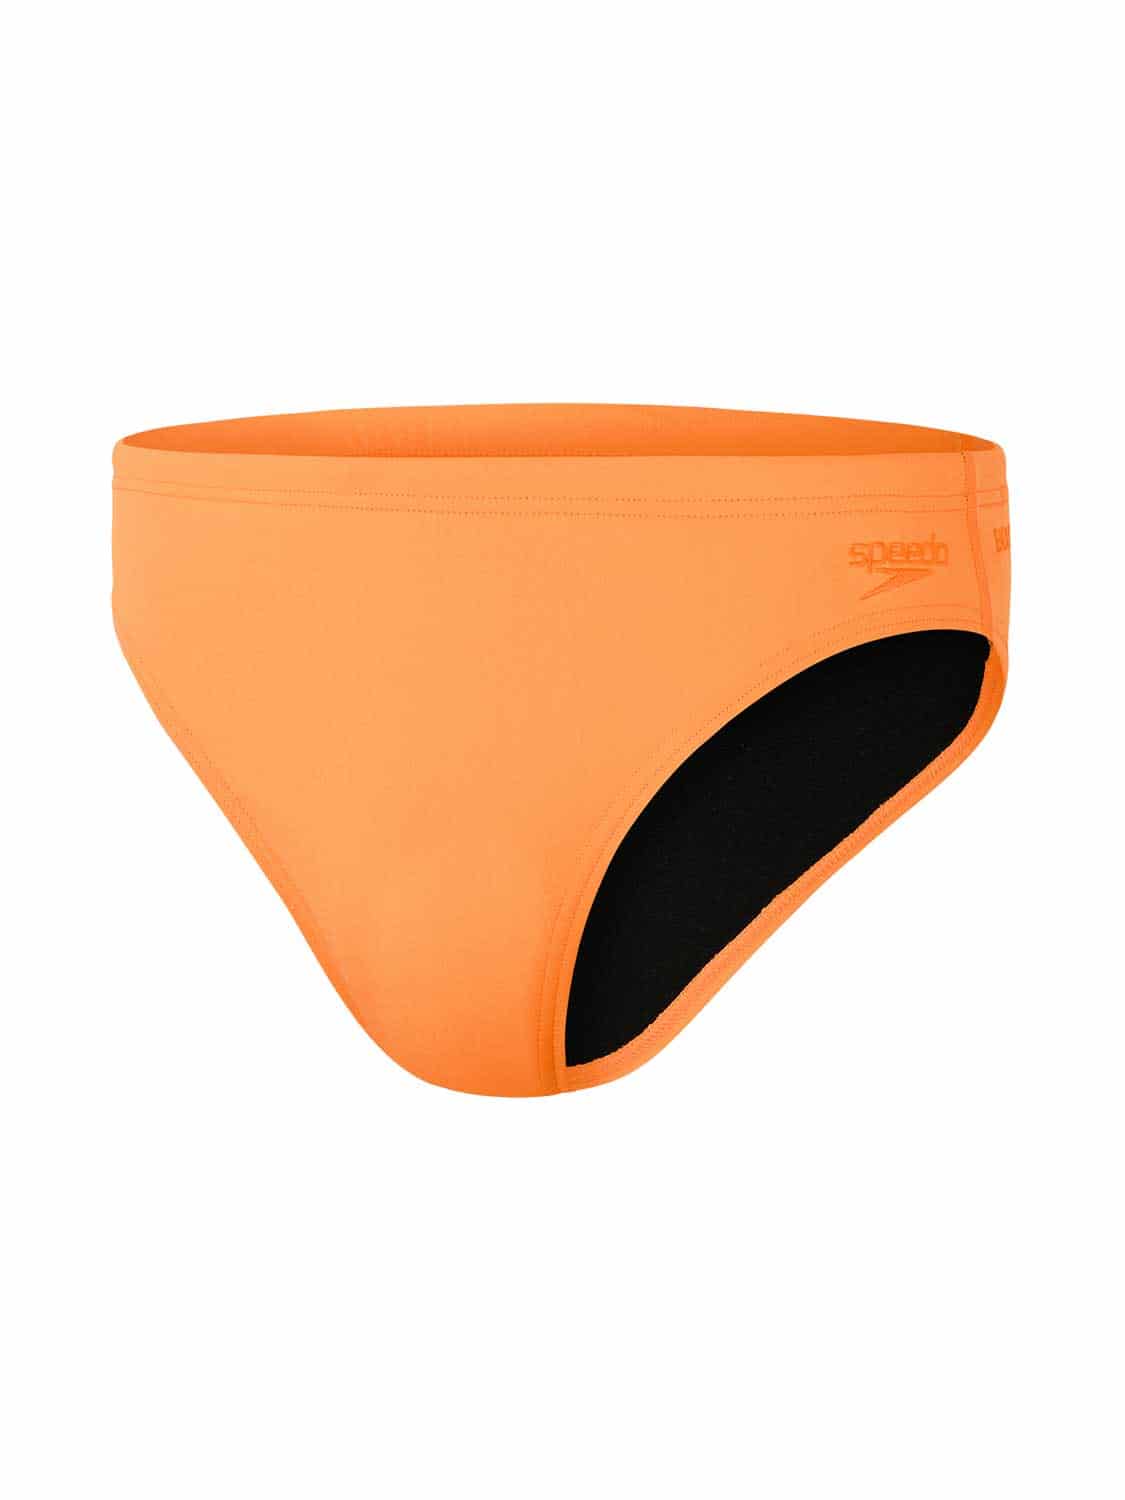 Speedo - Eco+ Swimbrief - 7cm - Oranje